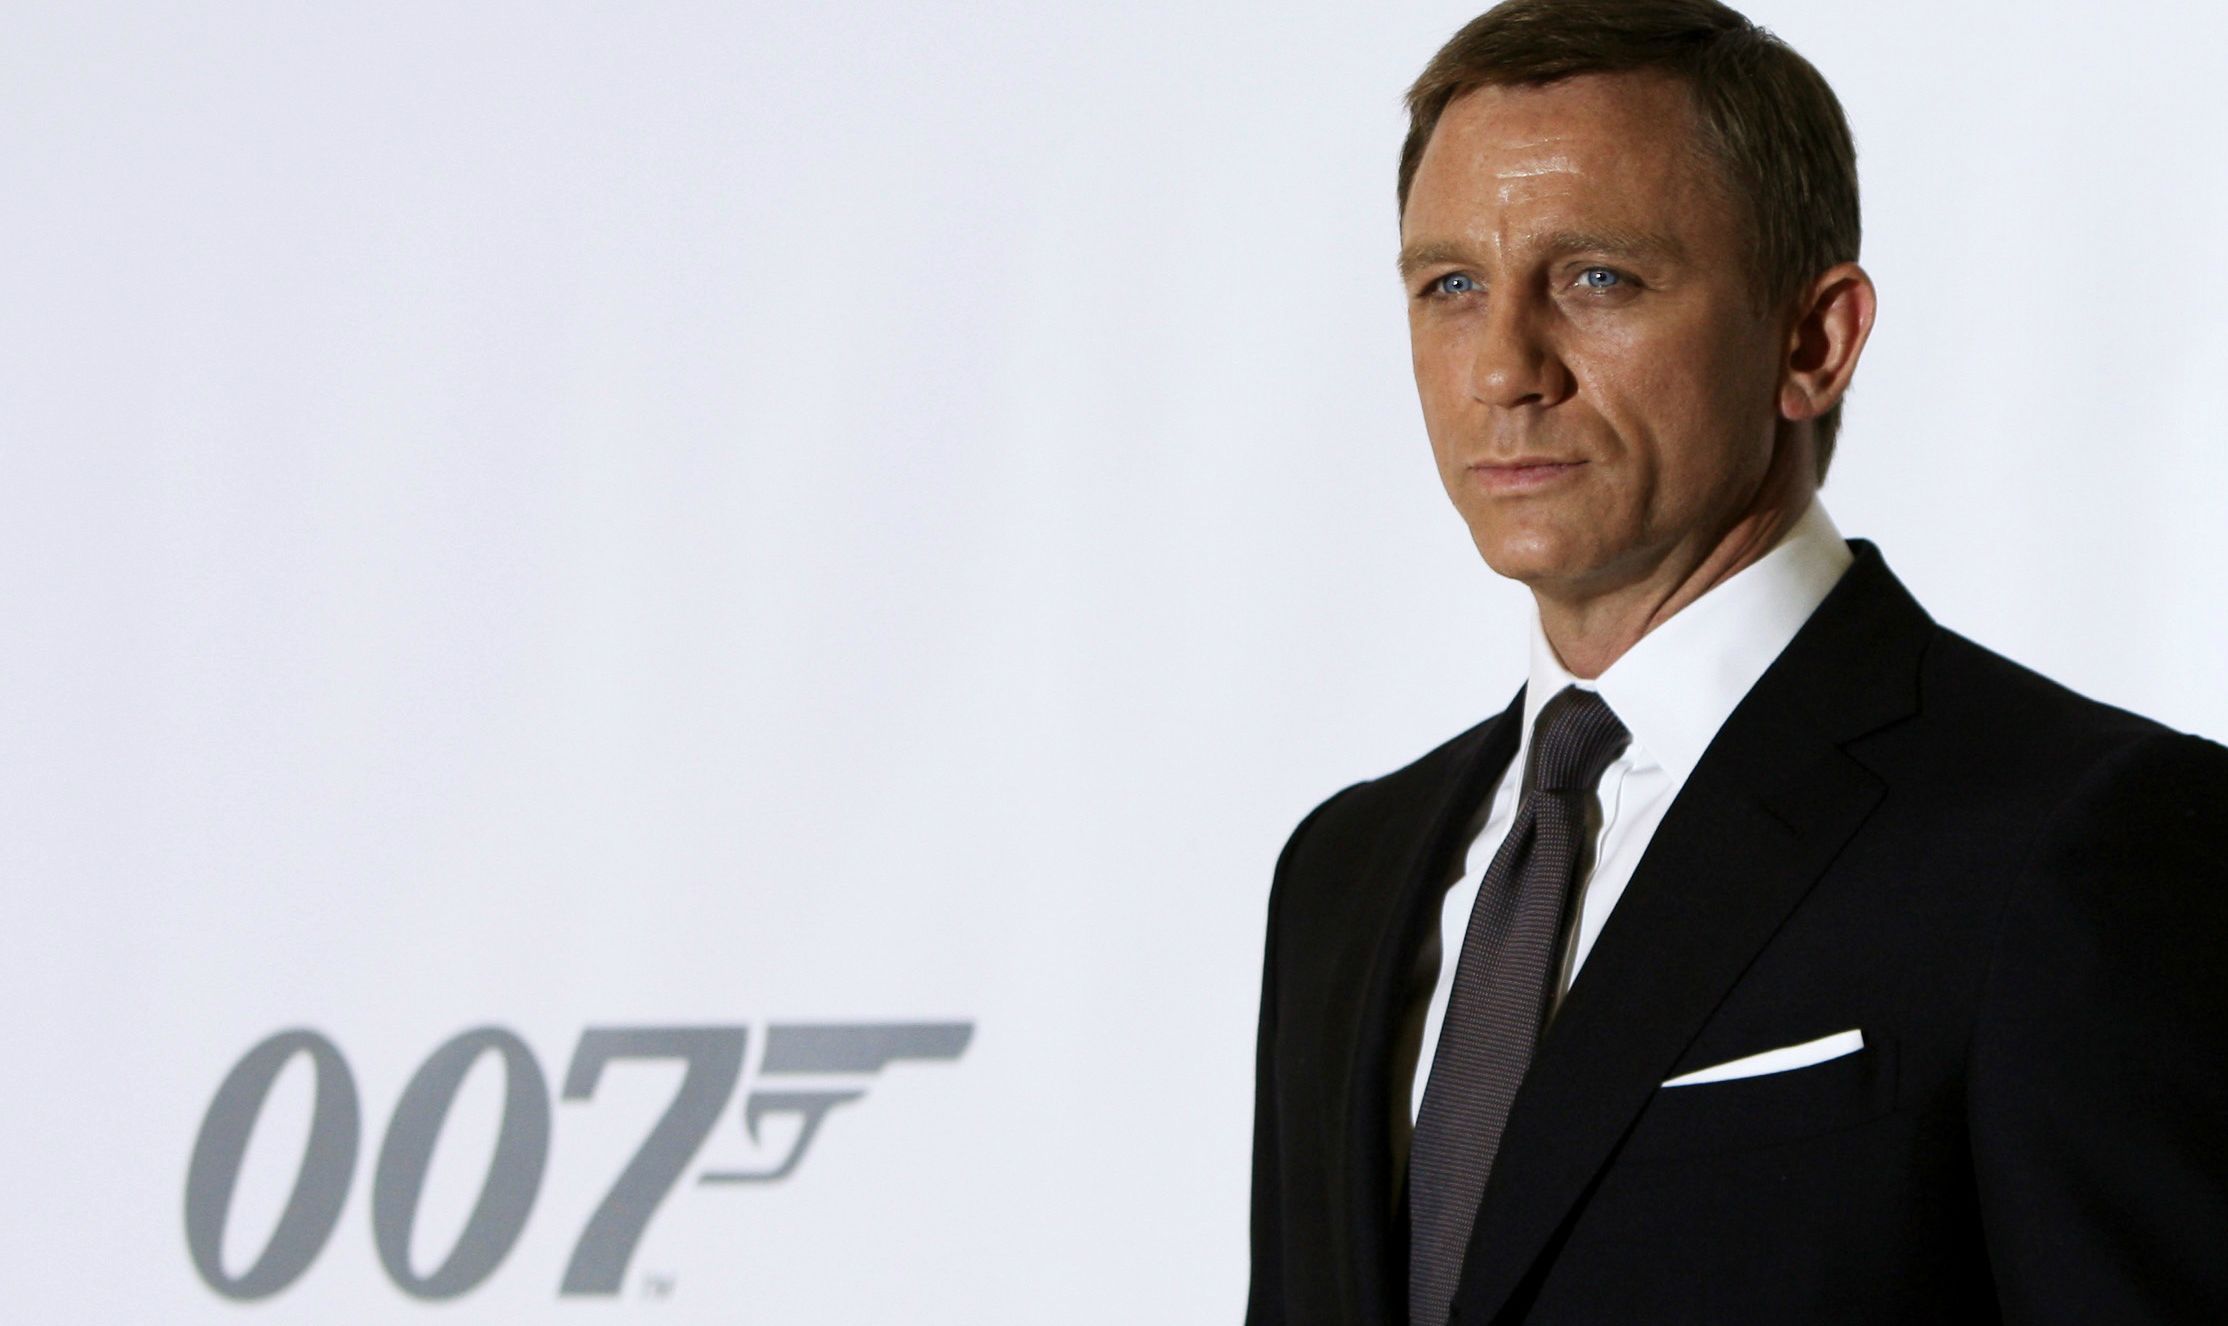 007, chi è stato il migliore e chi il peggiore James Bond?